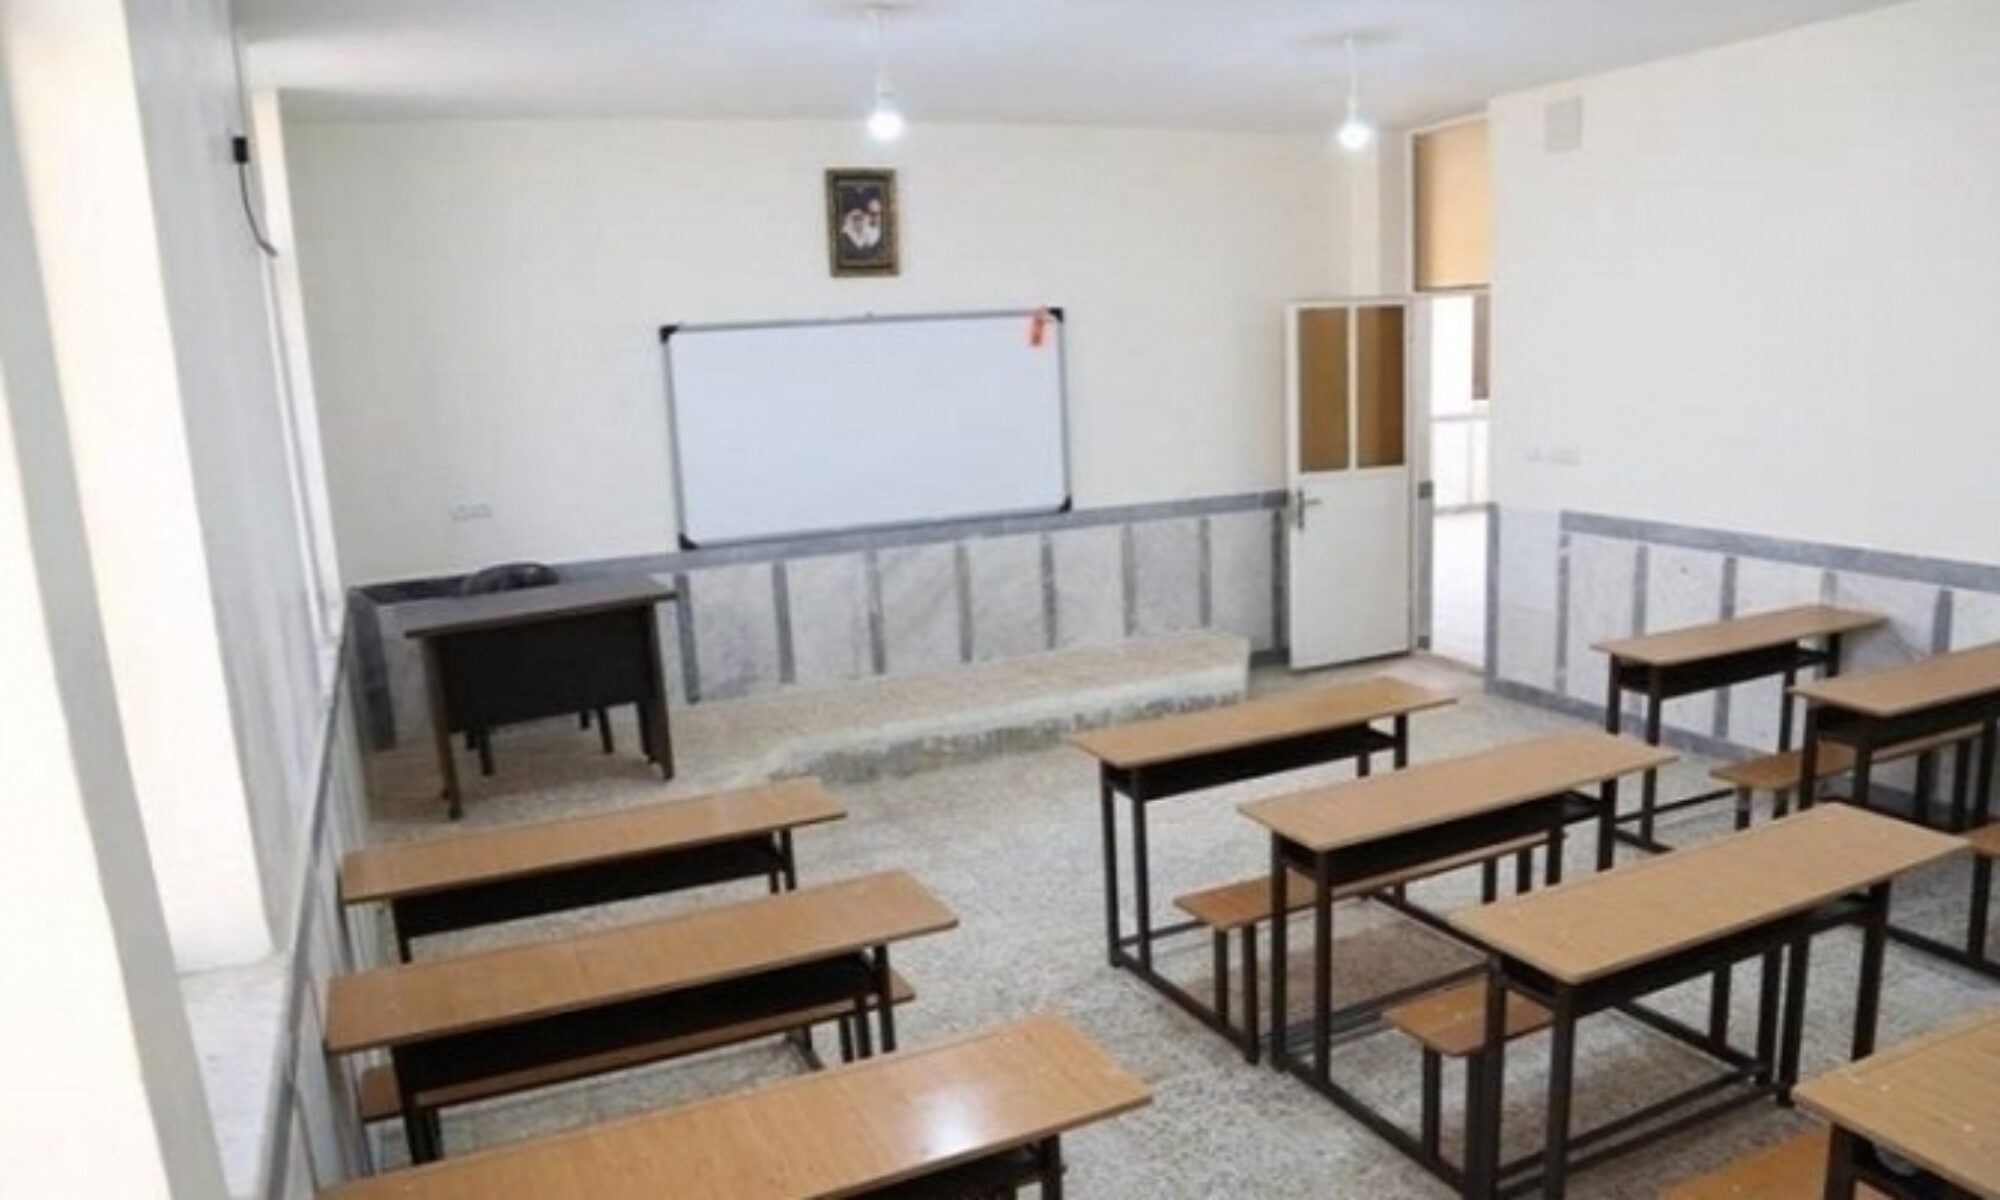 PKK ve TSK çatışmaları sonucu Keste köyü okulu kapandı